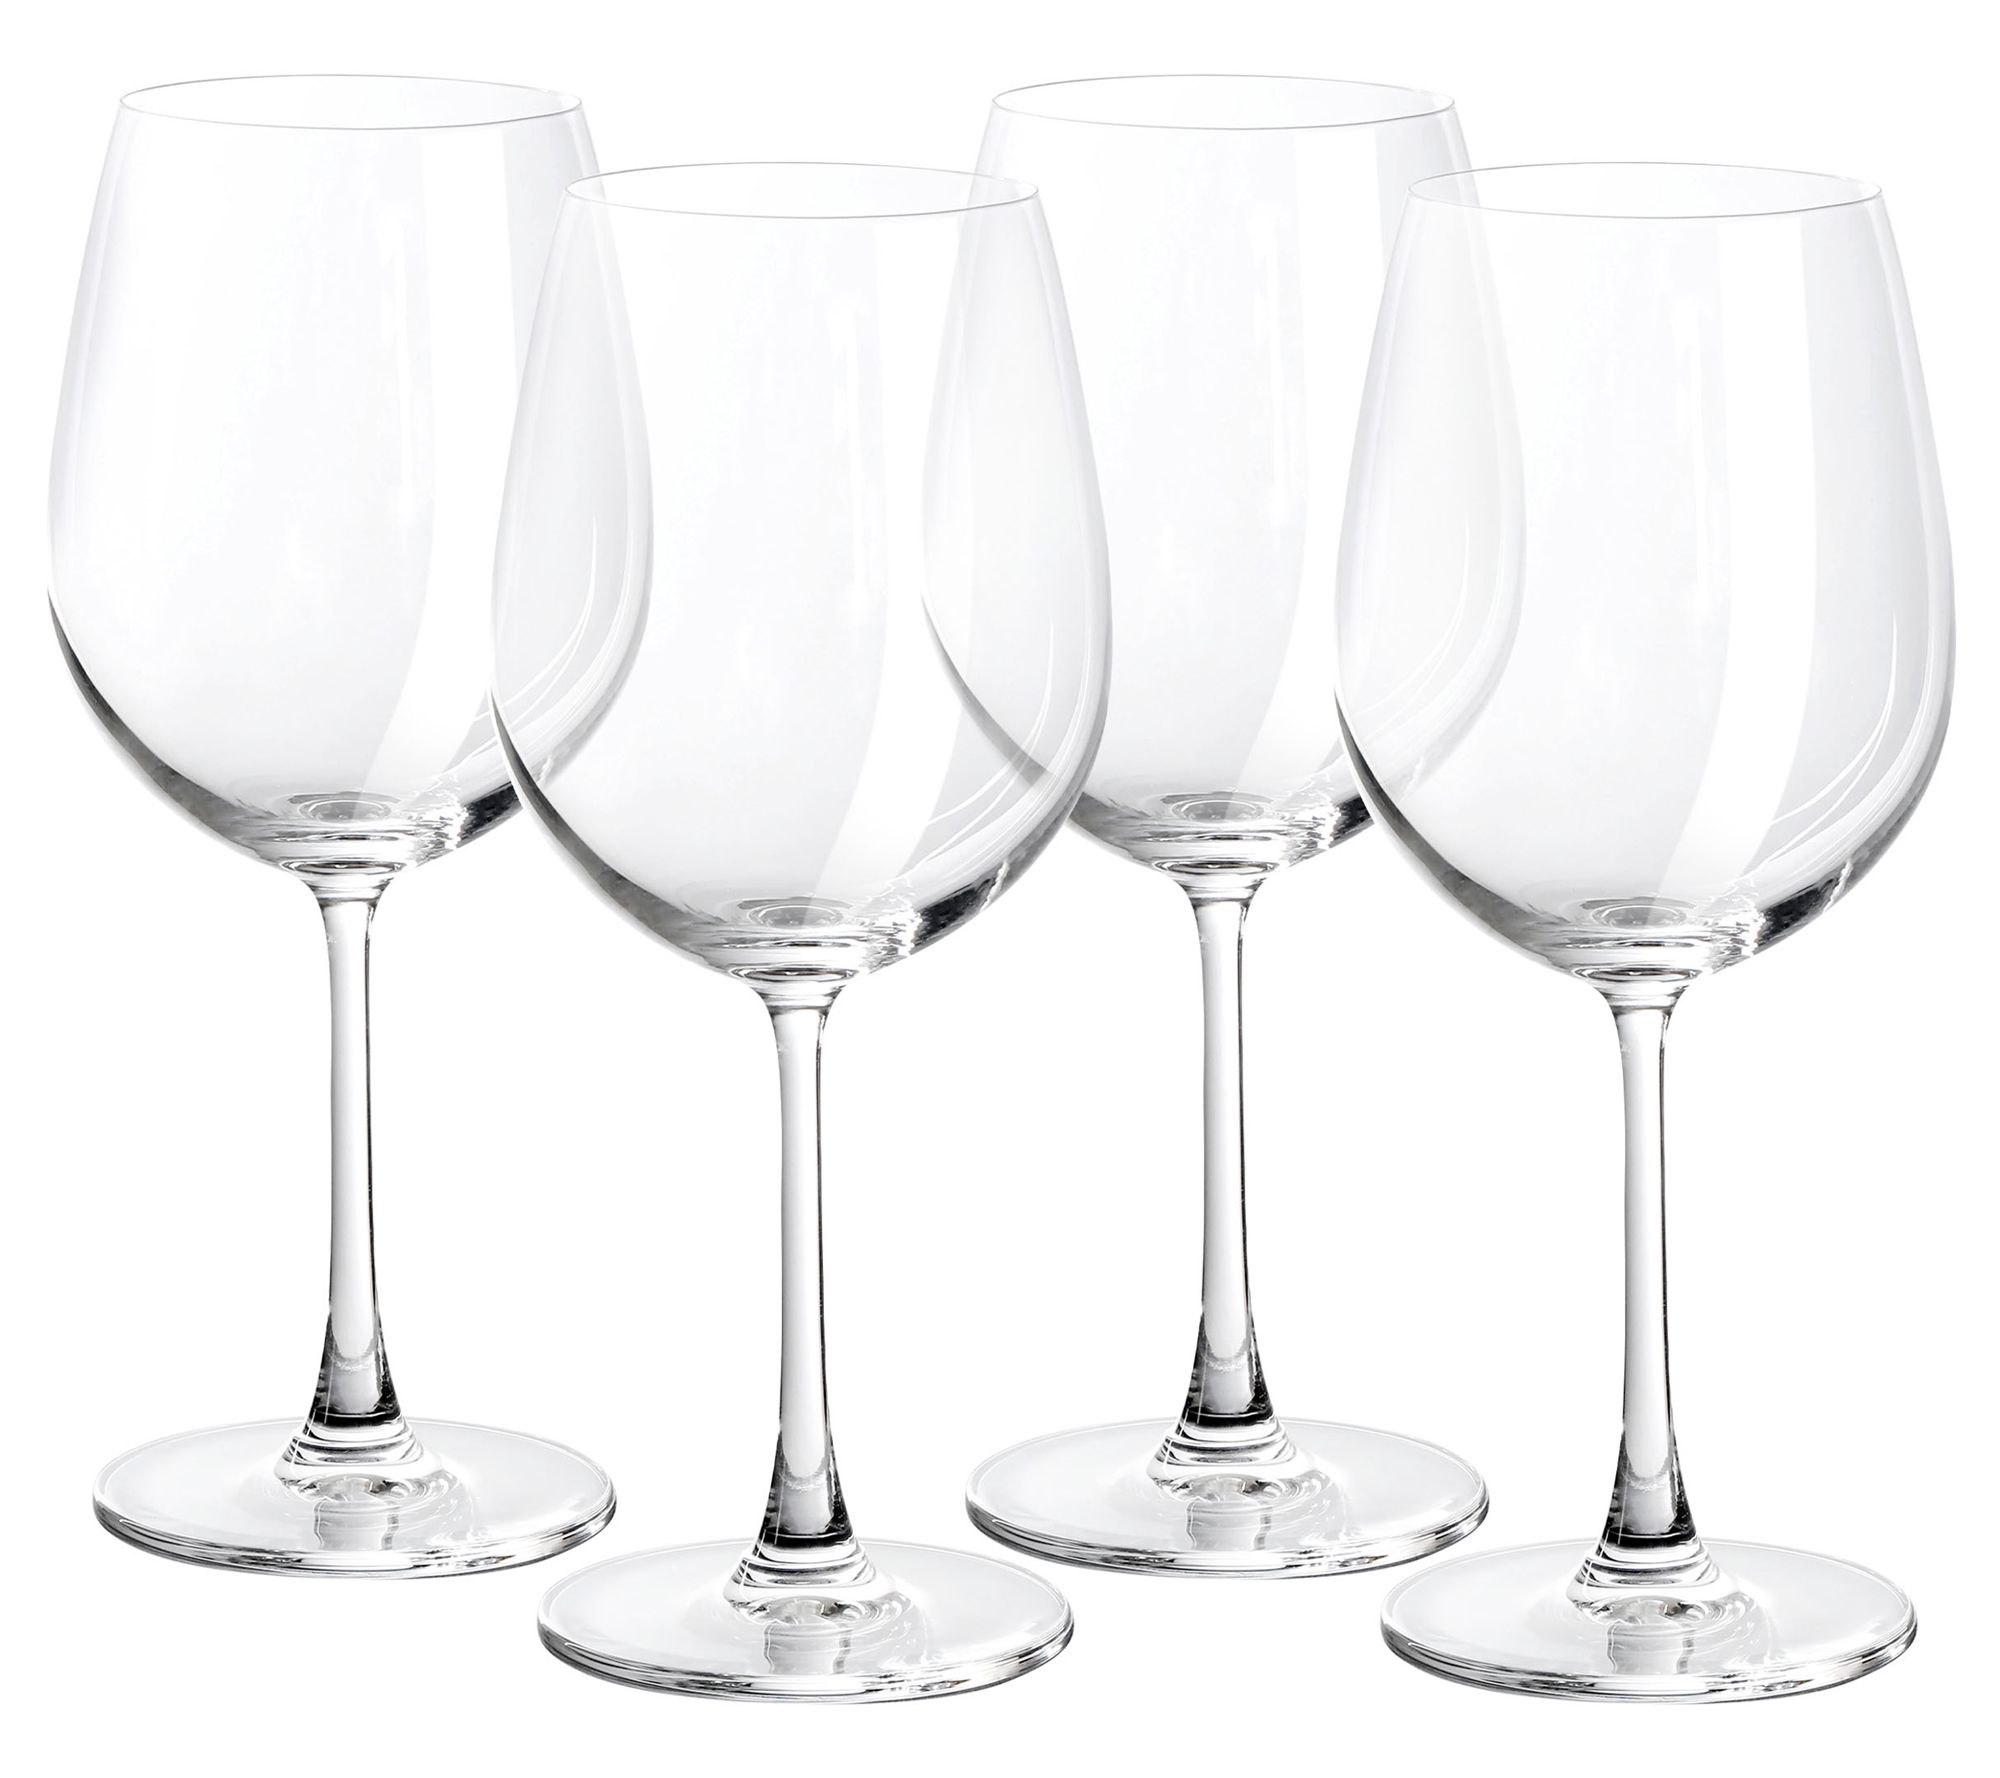 Godinger Meridian Stemless Wine Glasses, Blue - Set of 4